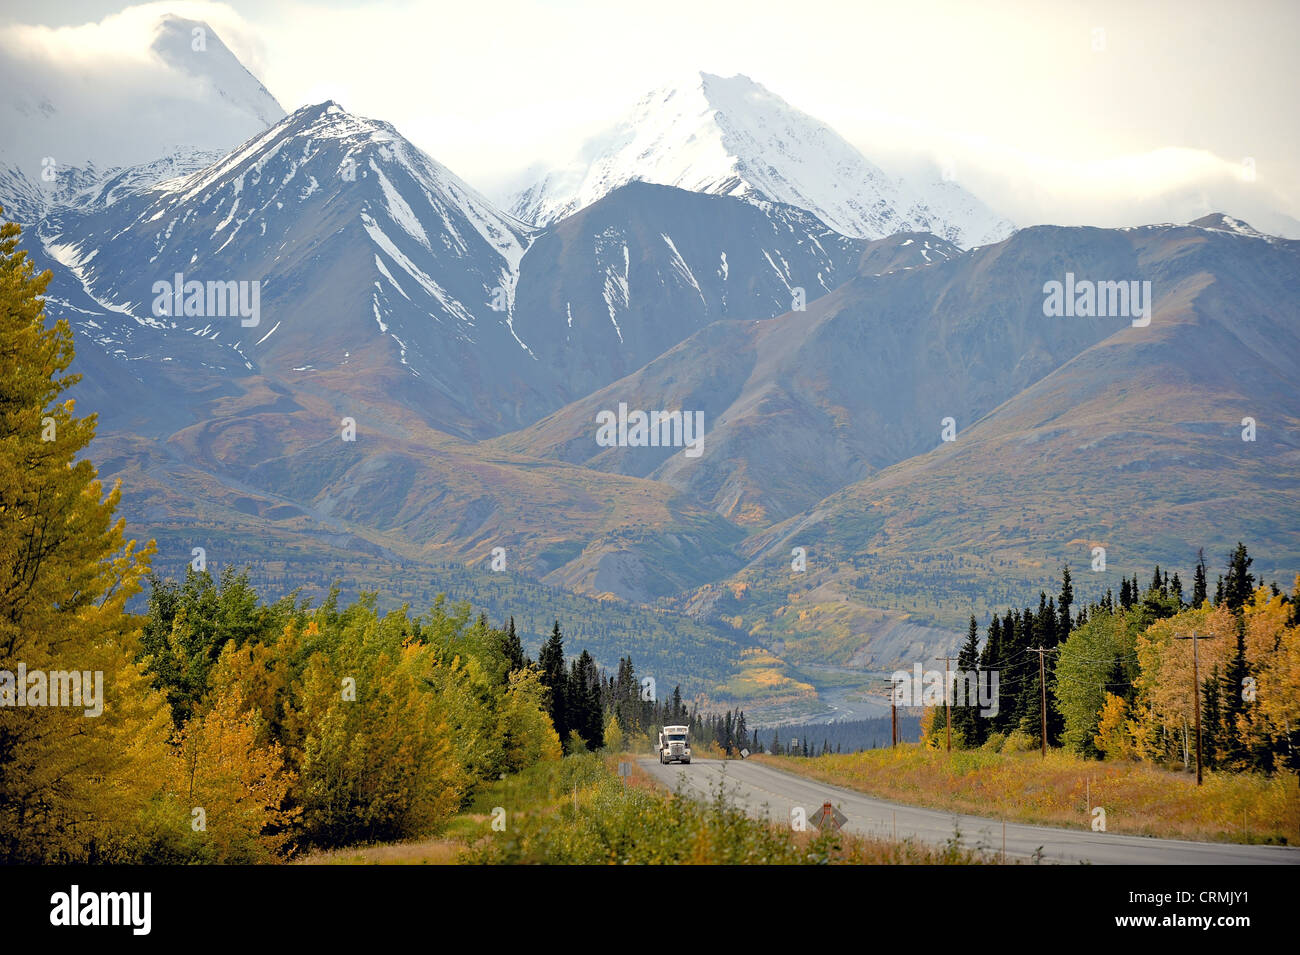 18 wheeler ou la conduite de camions sur une route à travers des montagnes enneigées et l'automne ou couleurs d'automne au Yukon, Canada Banque D'Images